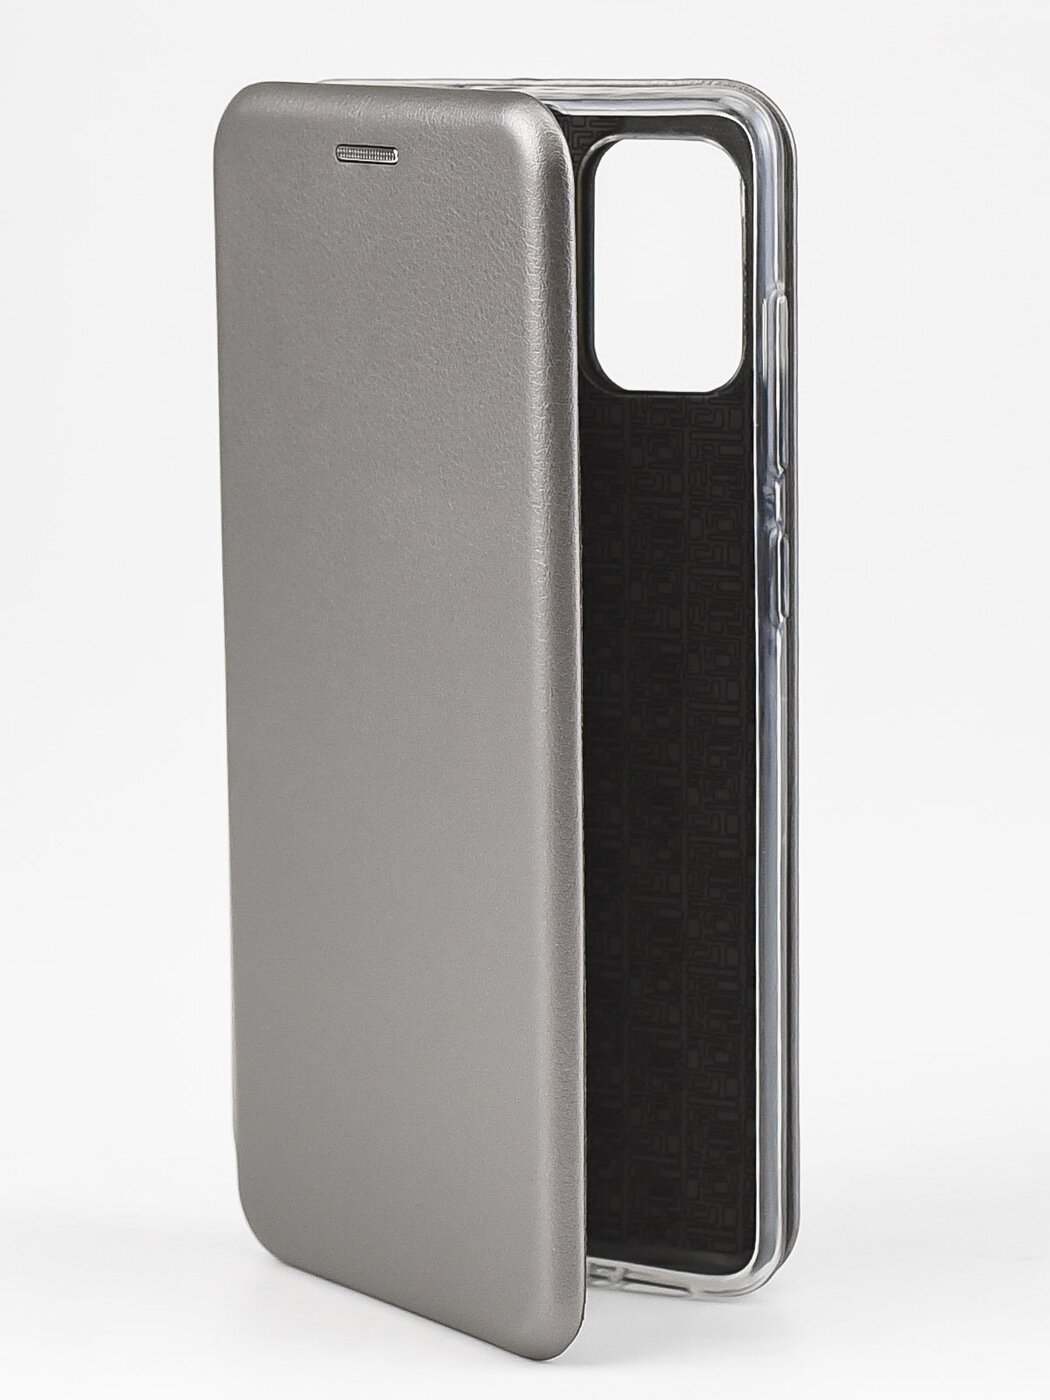 Защитный чехол книжка на телефон Samsung Galaxy A71 с отделением для карт, футляр для Самсунг Галакси А71 с картхолдером